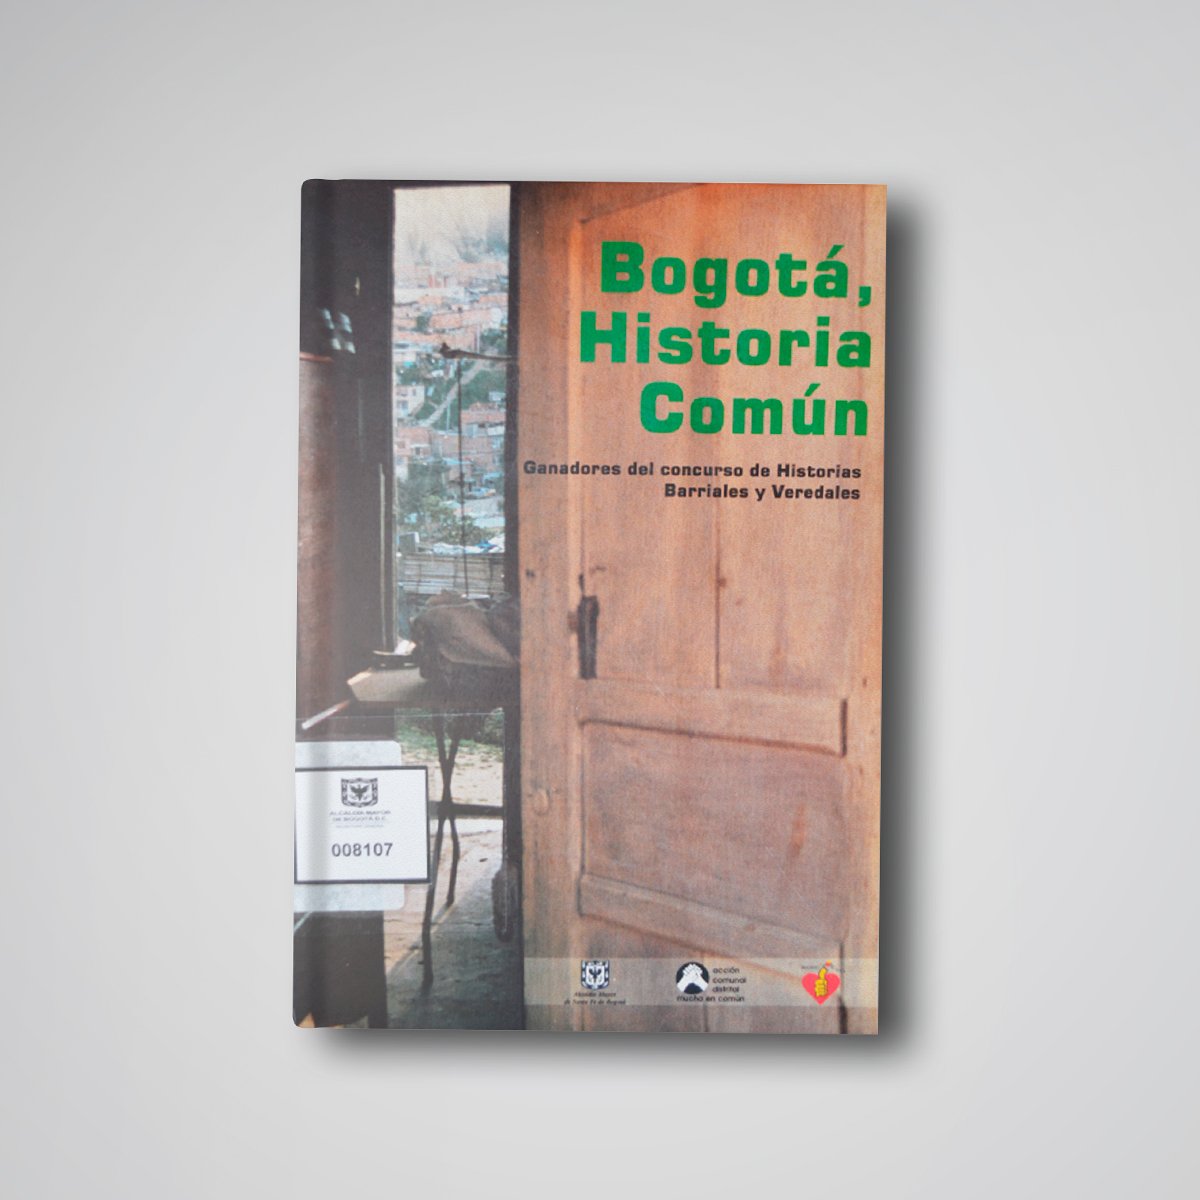 Bogotá, Historia Común. Ganadores del concurso de Historias Barriales y Veredales. 1997